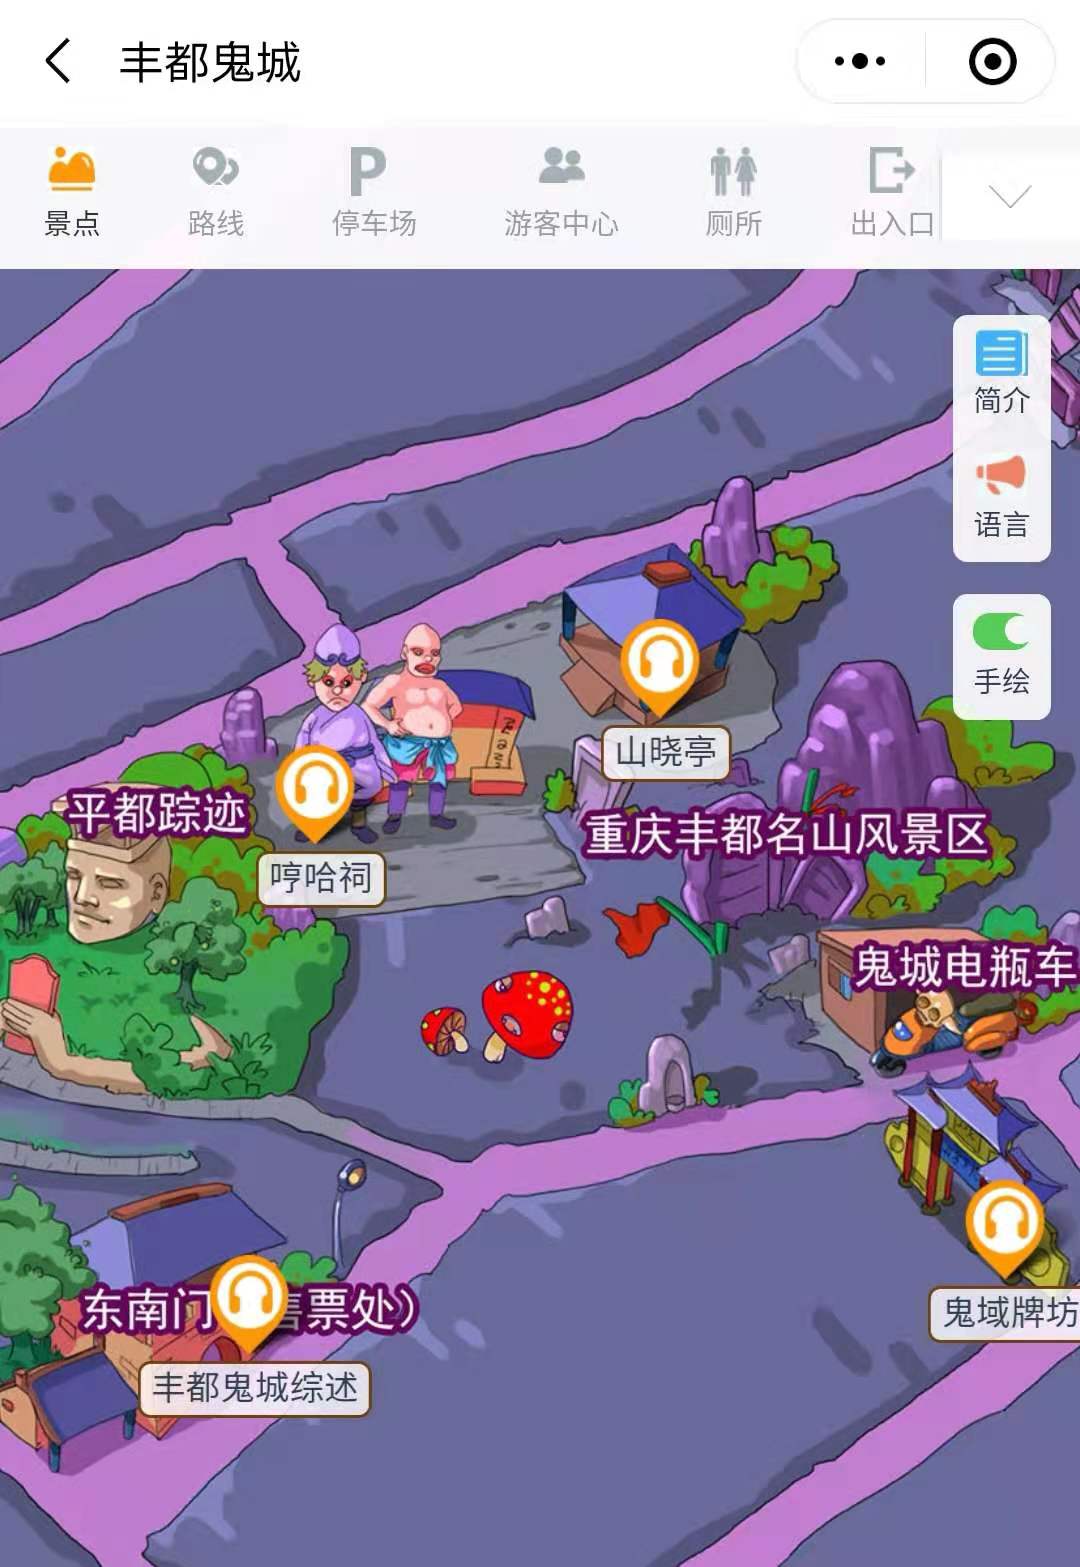 2021年国家4A景区重庆丰都鬼城景区手绘地图，电子导览，语音讲解系统上线.jpg